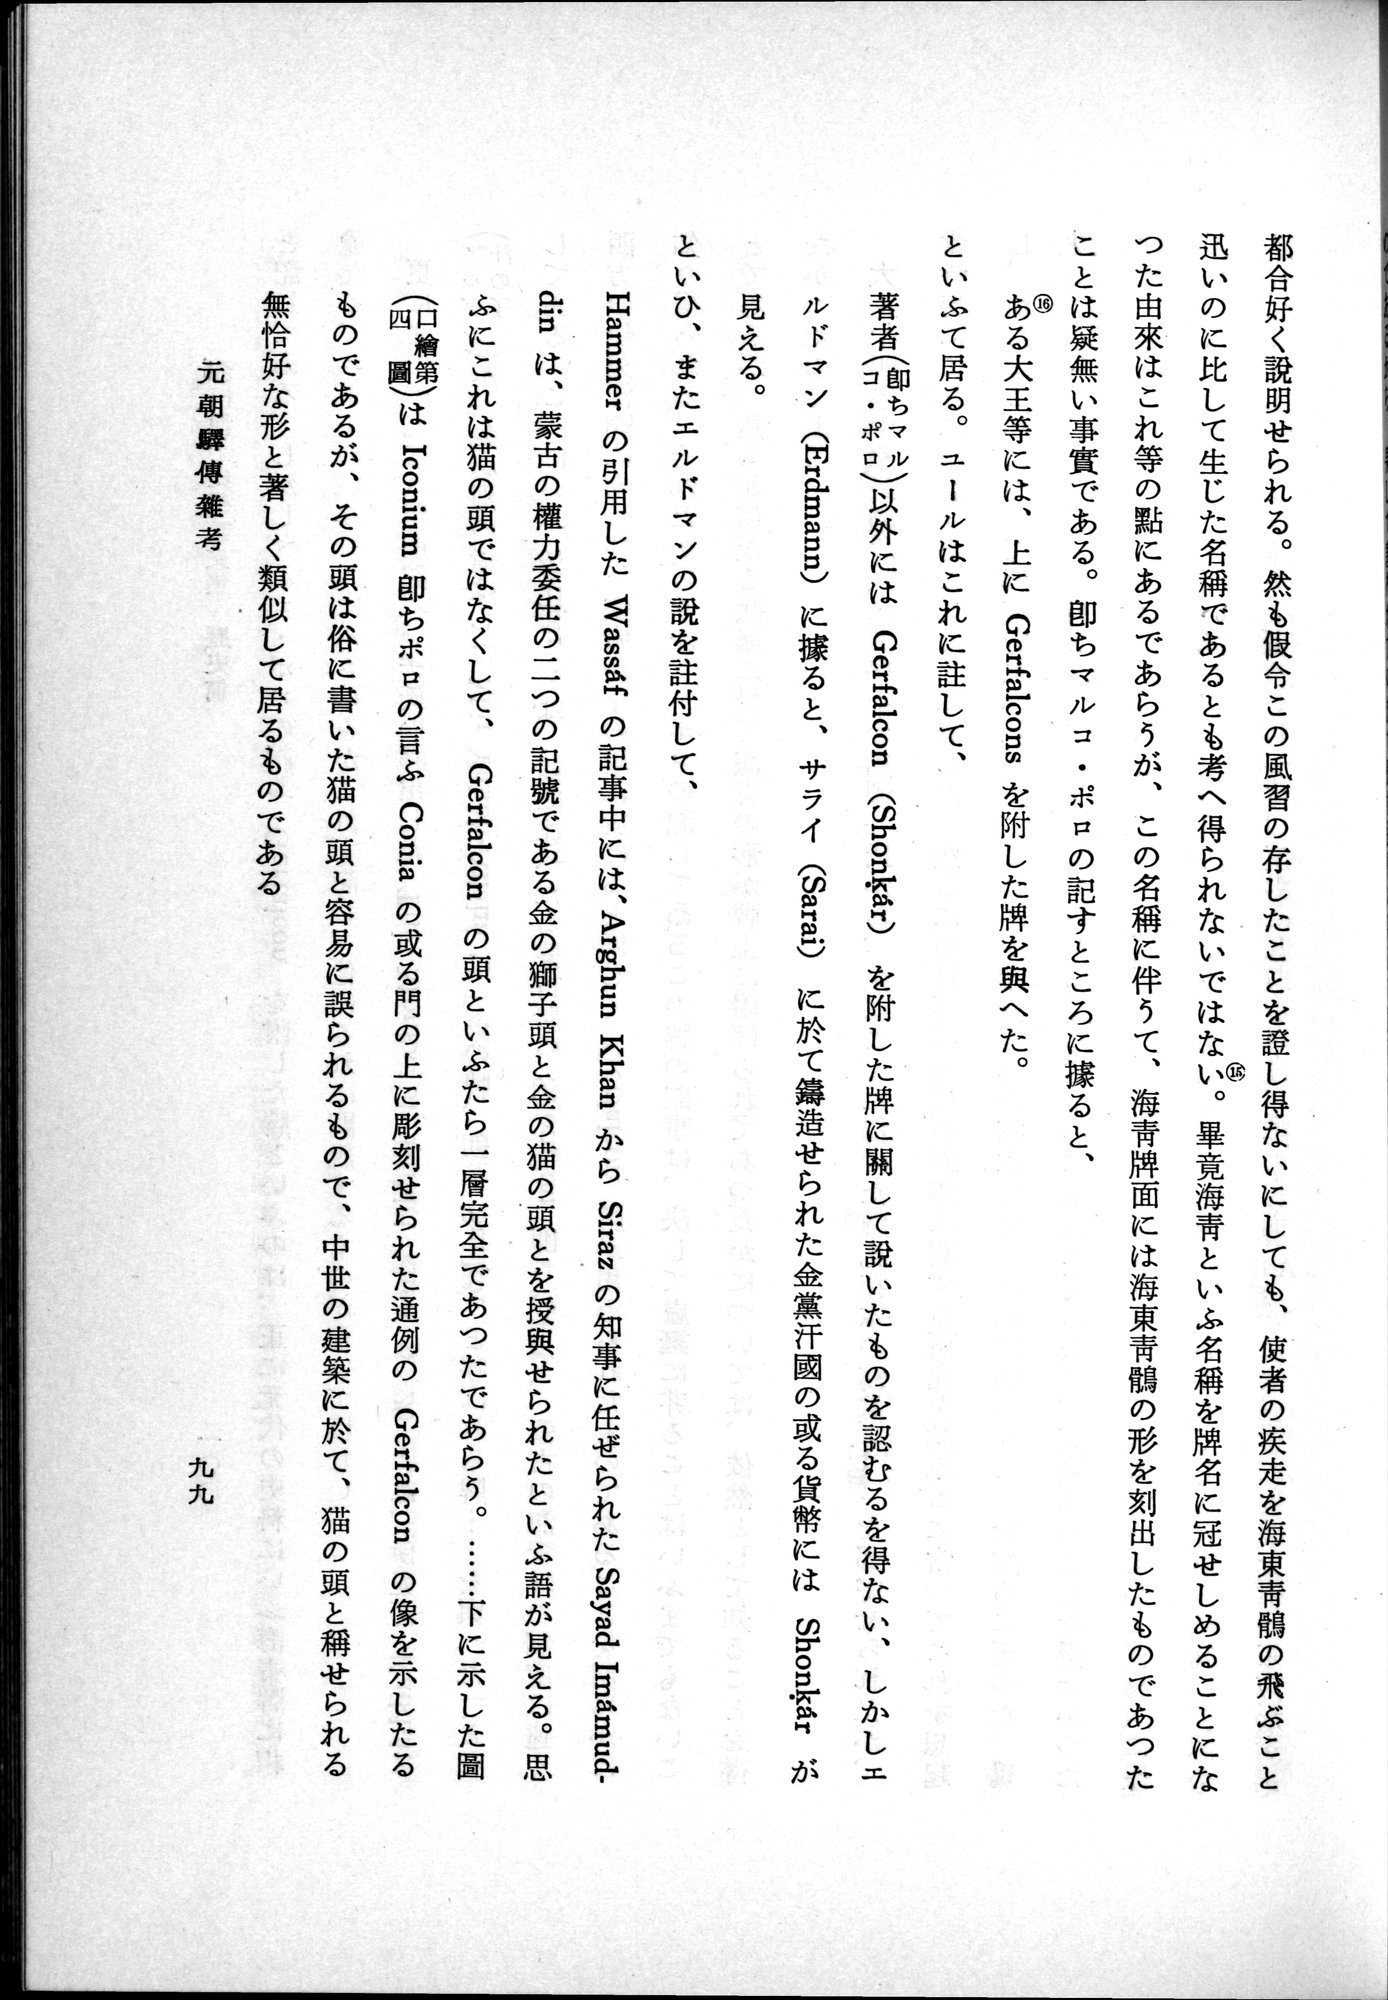 羽田博士史学論文集 : vol.1 / Page 137 (Grayscale High Resolution Image)